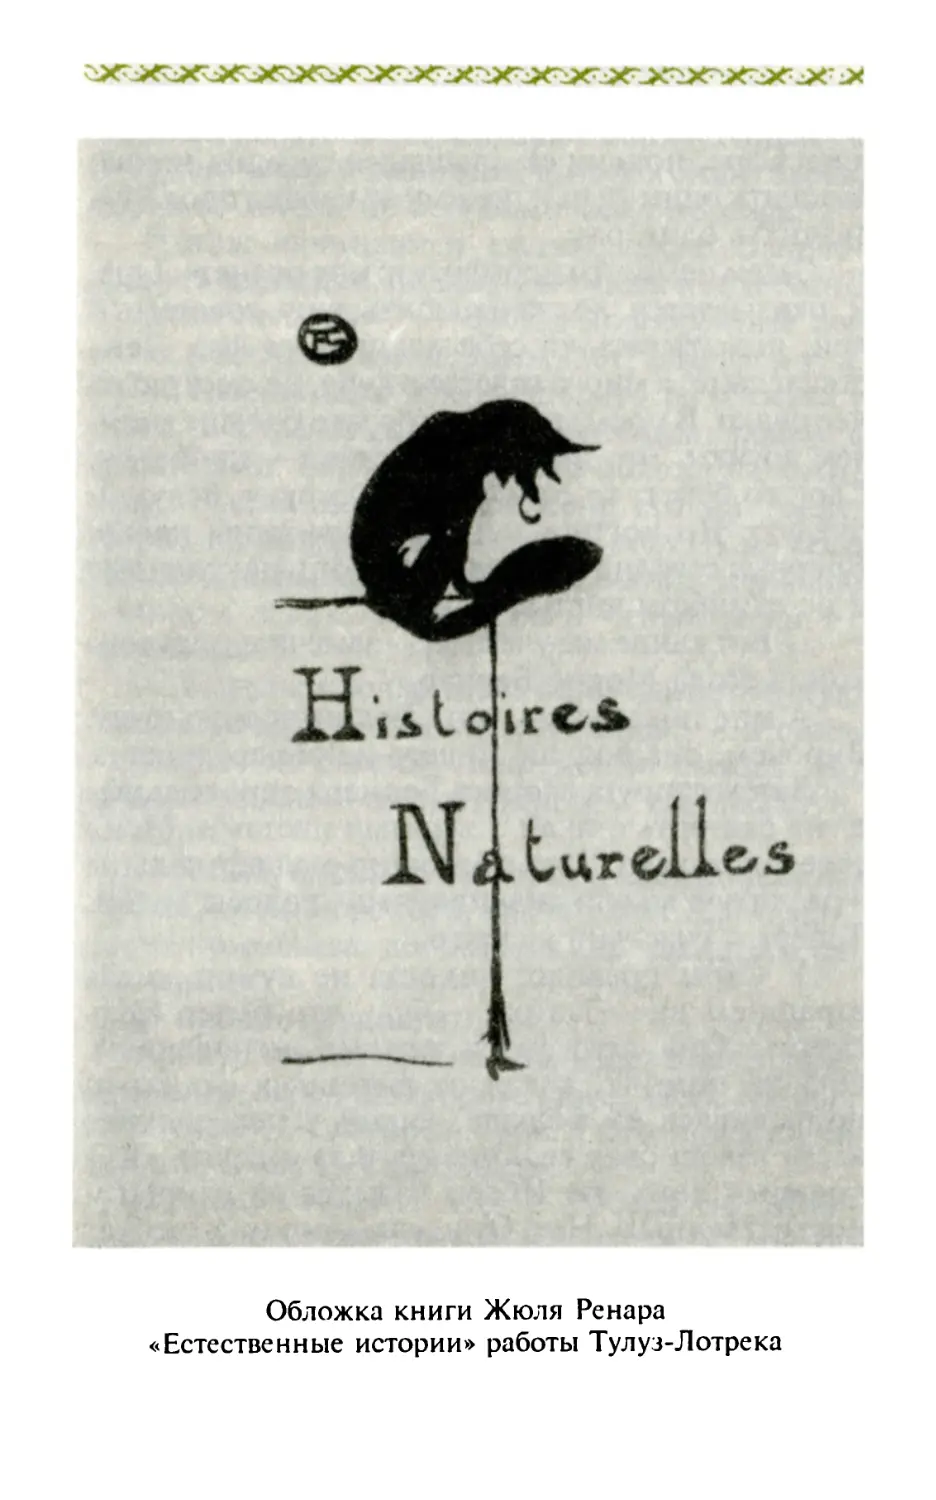 Обложка книги Ж. Ренара «Естественные истории» работы Тулуз-Лотрека